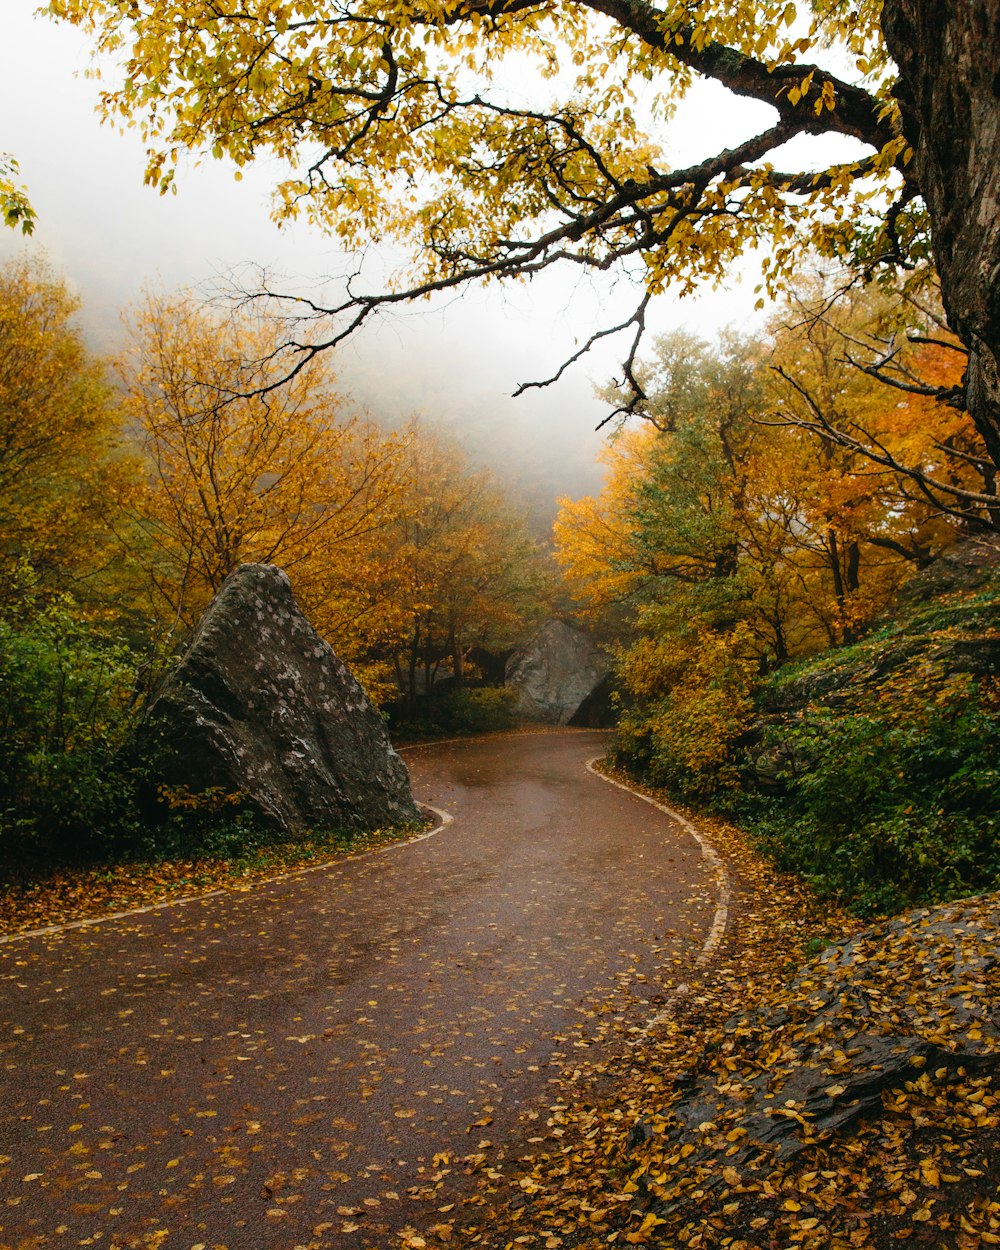 sentiero circondato da alberi dalle foglie gialle